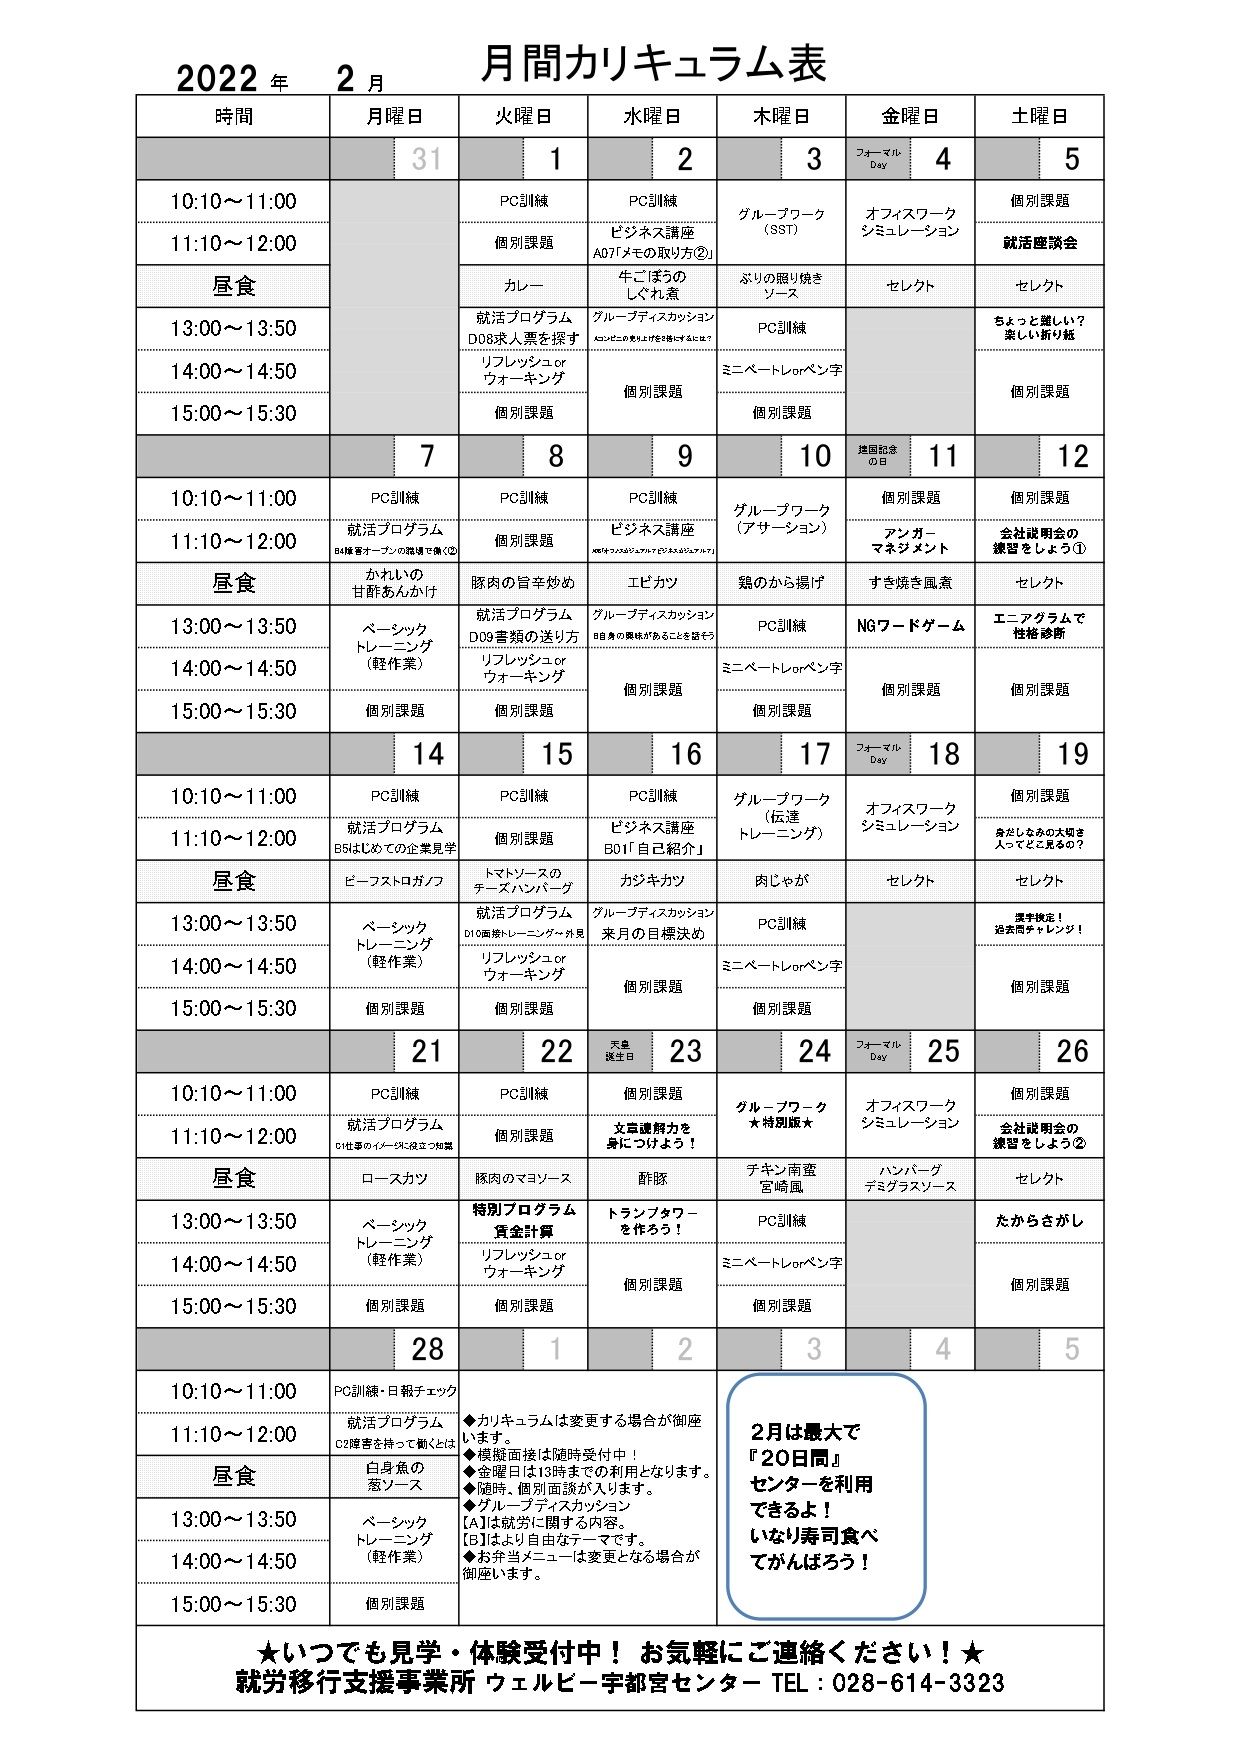 【宇都宮センター】月間カリキュラム表_202202_page-0001